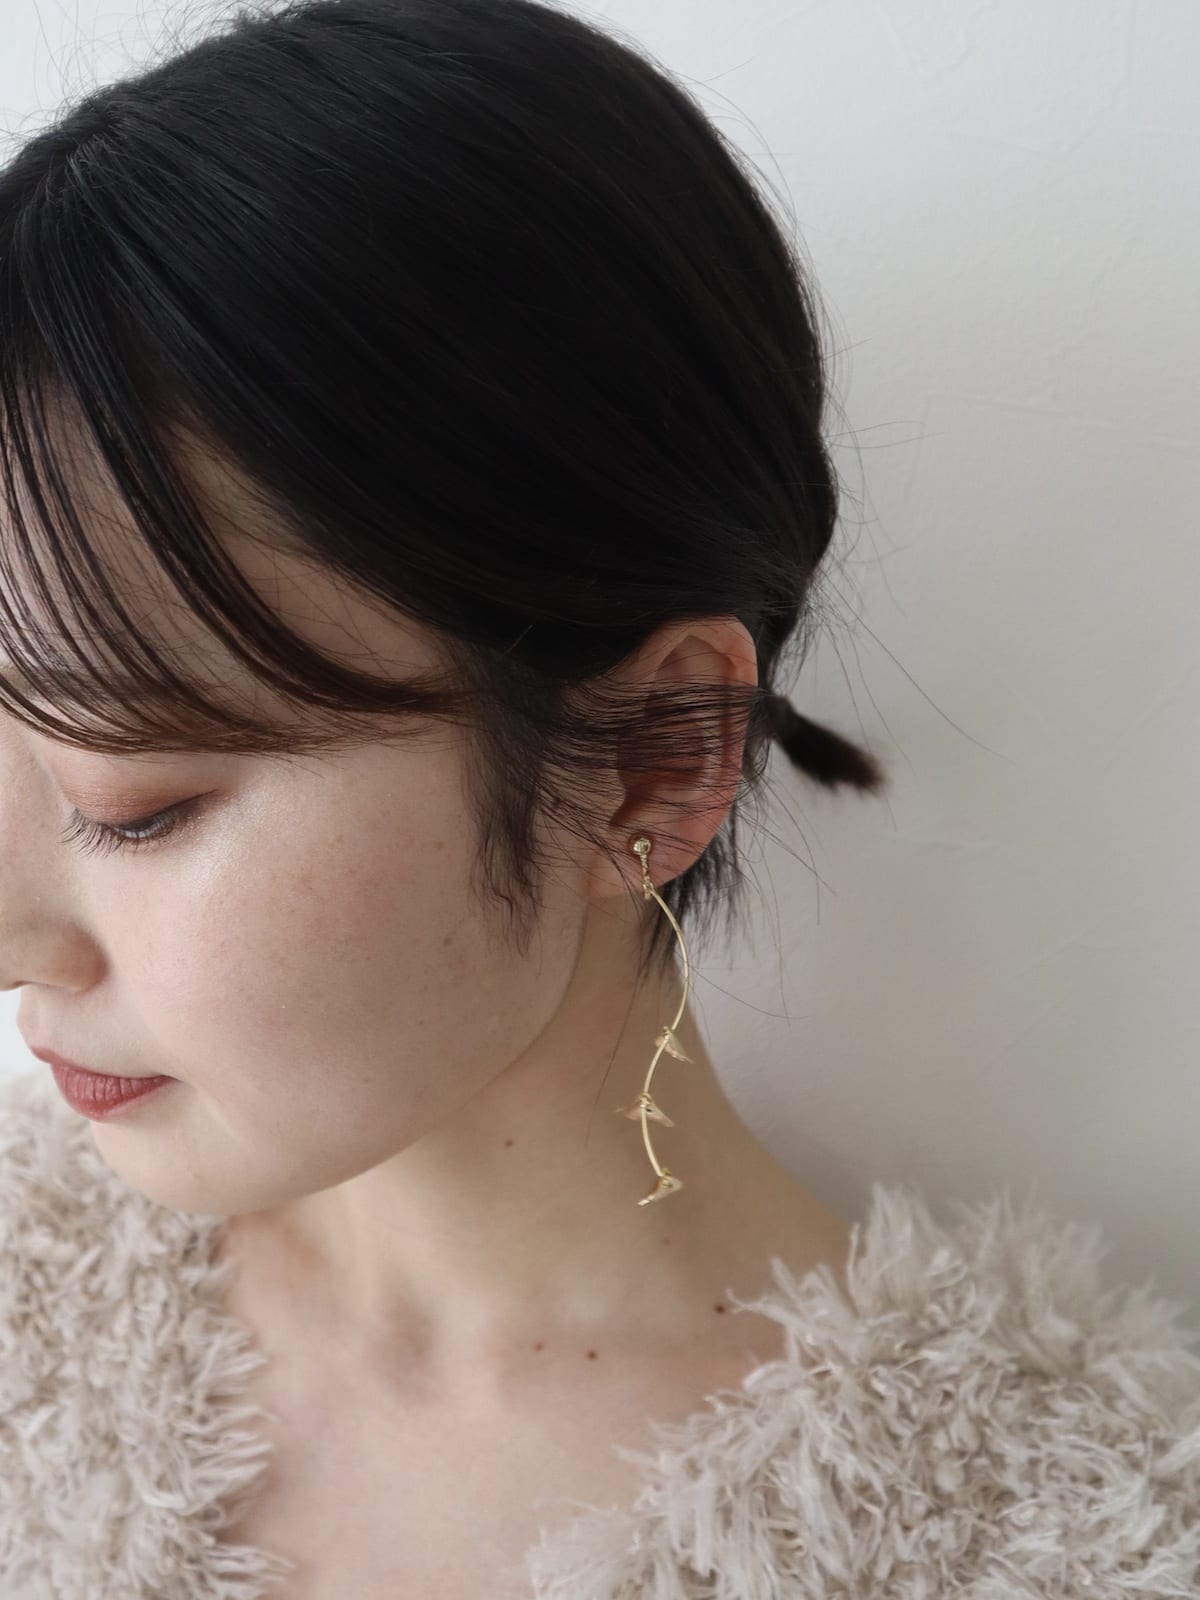 blooming pierce/earing